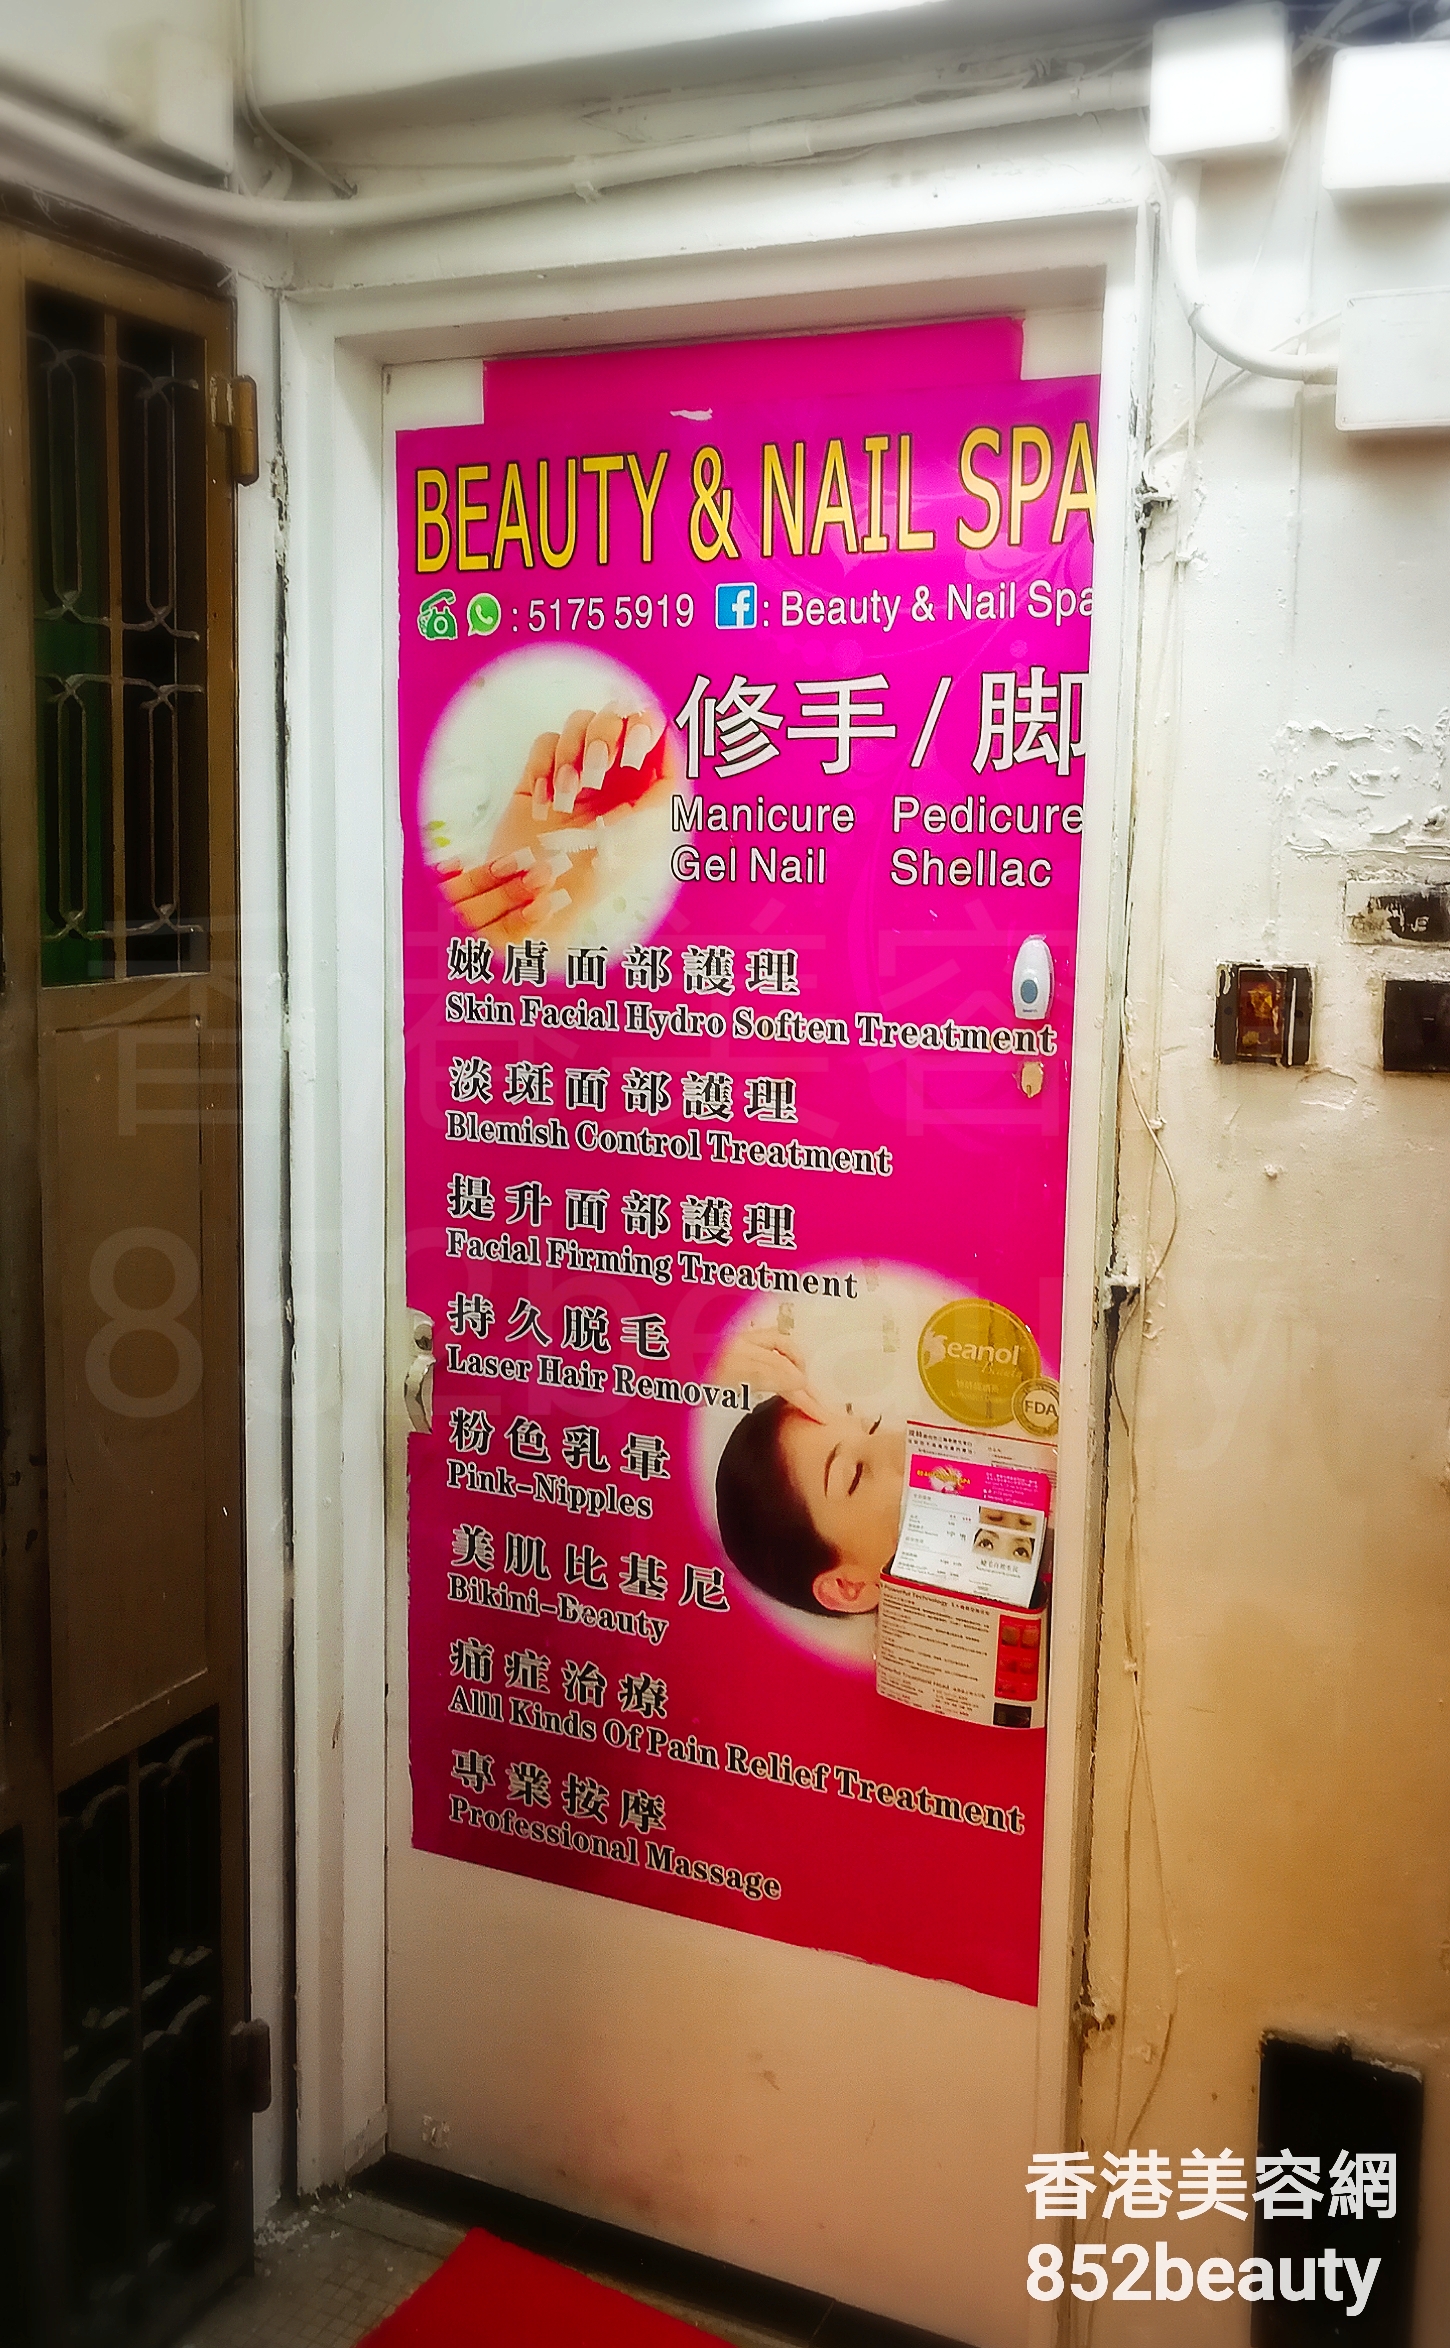 按摩/SPA: Beauty & Nail Spa